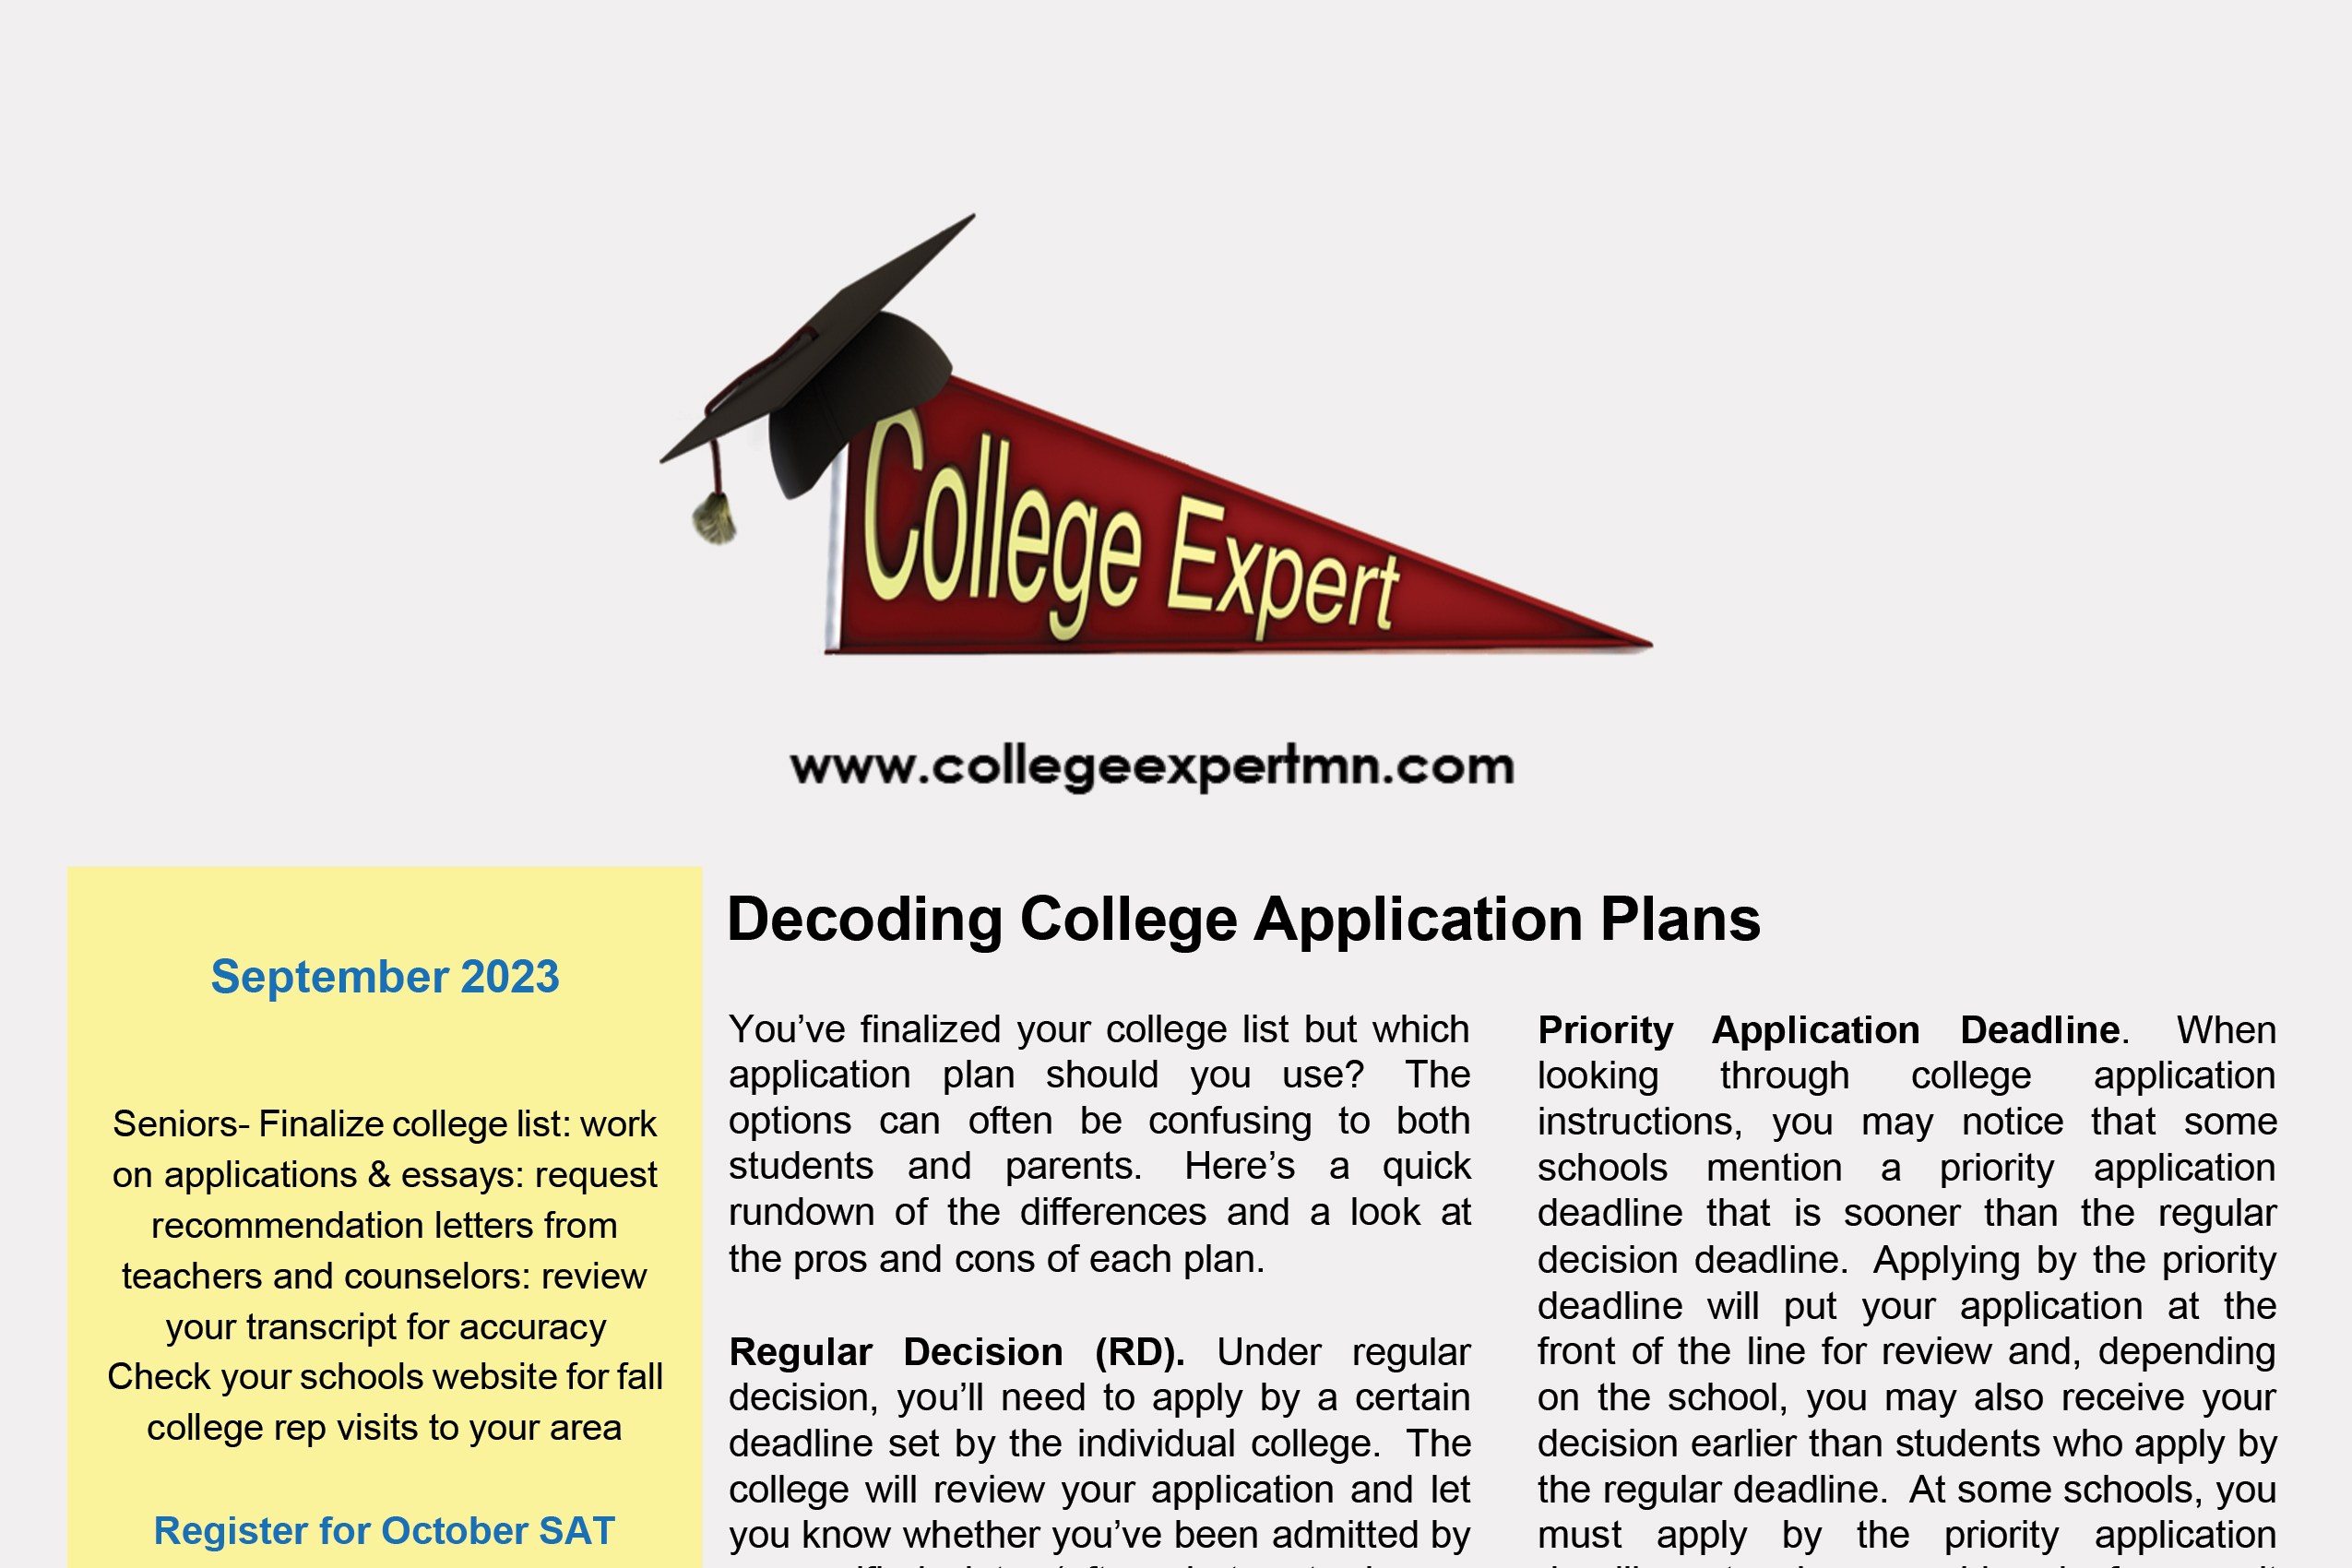 September 2023 College Expert Newsletter